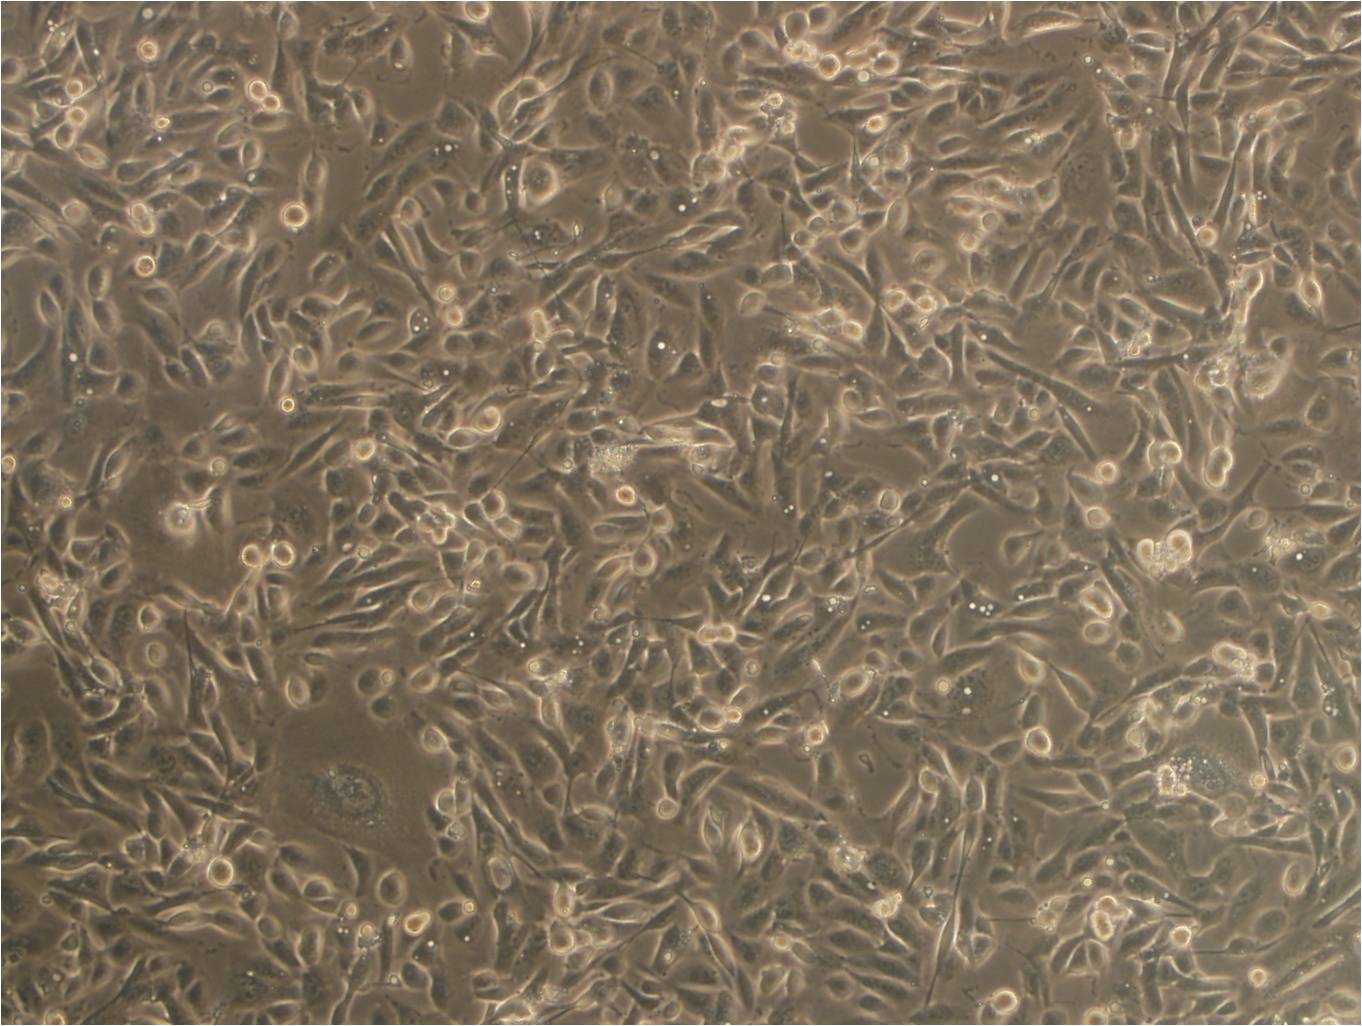 A-431 epithelioid cells人皮肤鳞癌细胞系,A-431 epithelioid cells